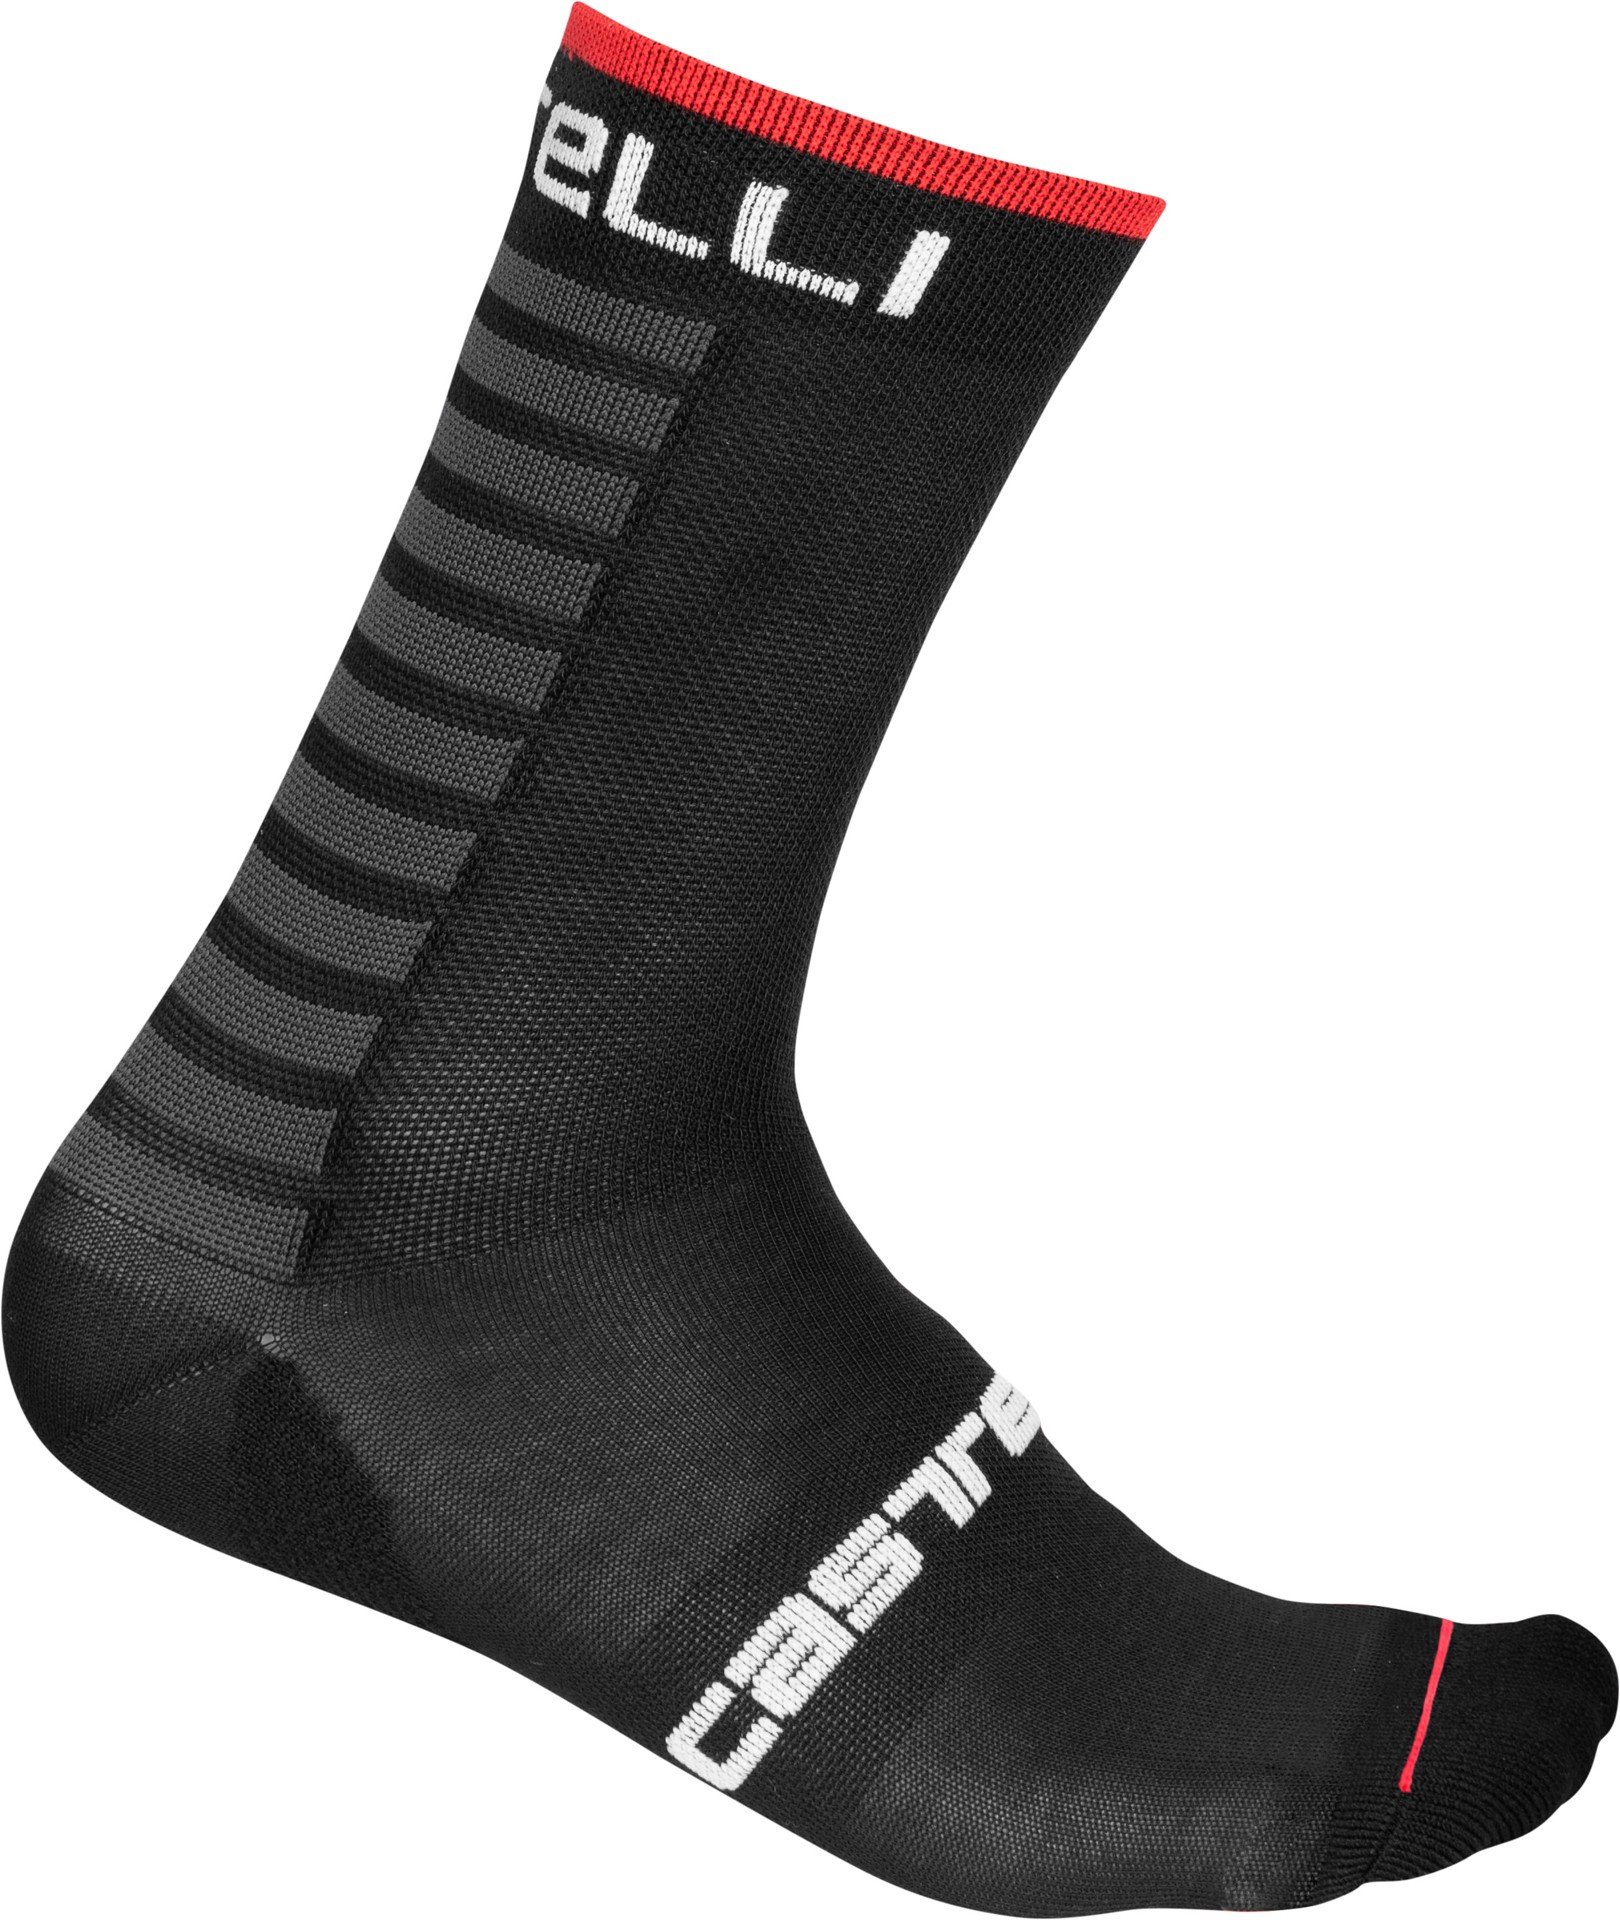 Castelli primaloft 15 chaussettes de cyclisme noir